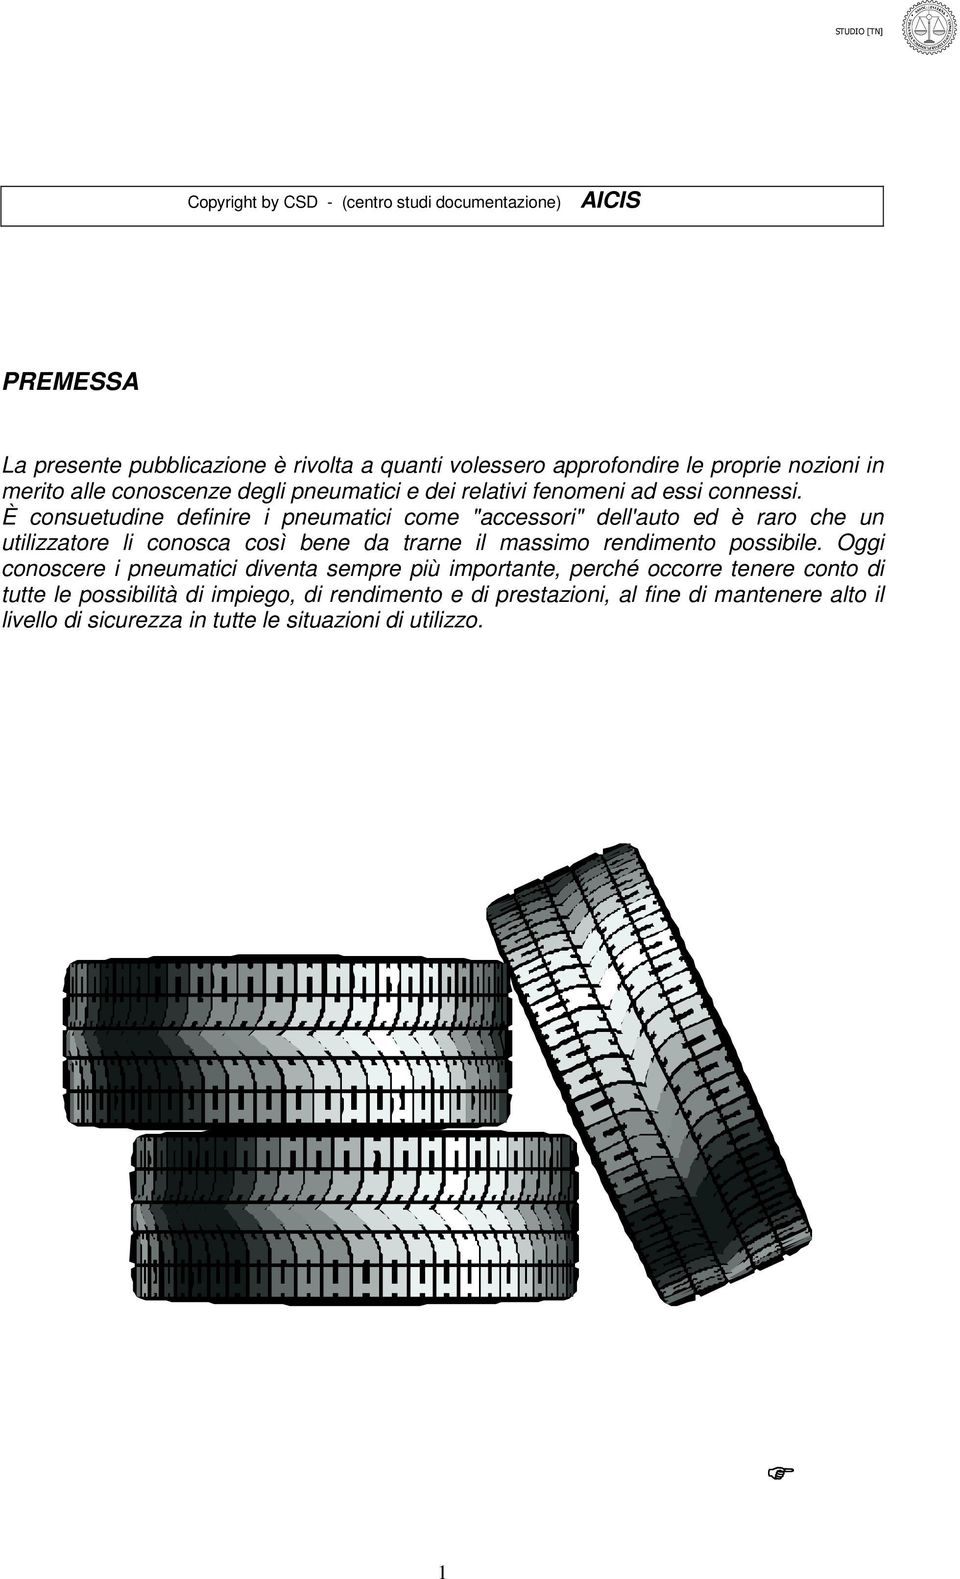 È consuetudine definire i pneumatici come "accessori" dell'auto ed è raro che un utilizzatore li conosca così bene da trarne il massimo rendimento possibile.